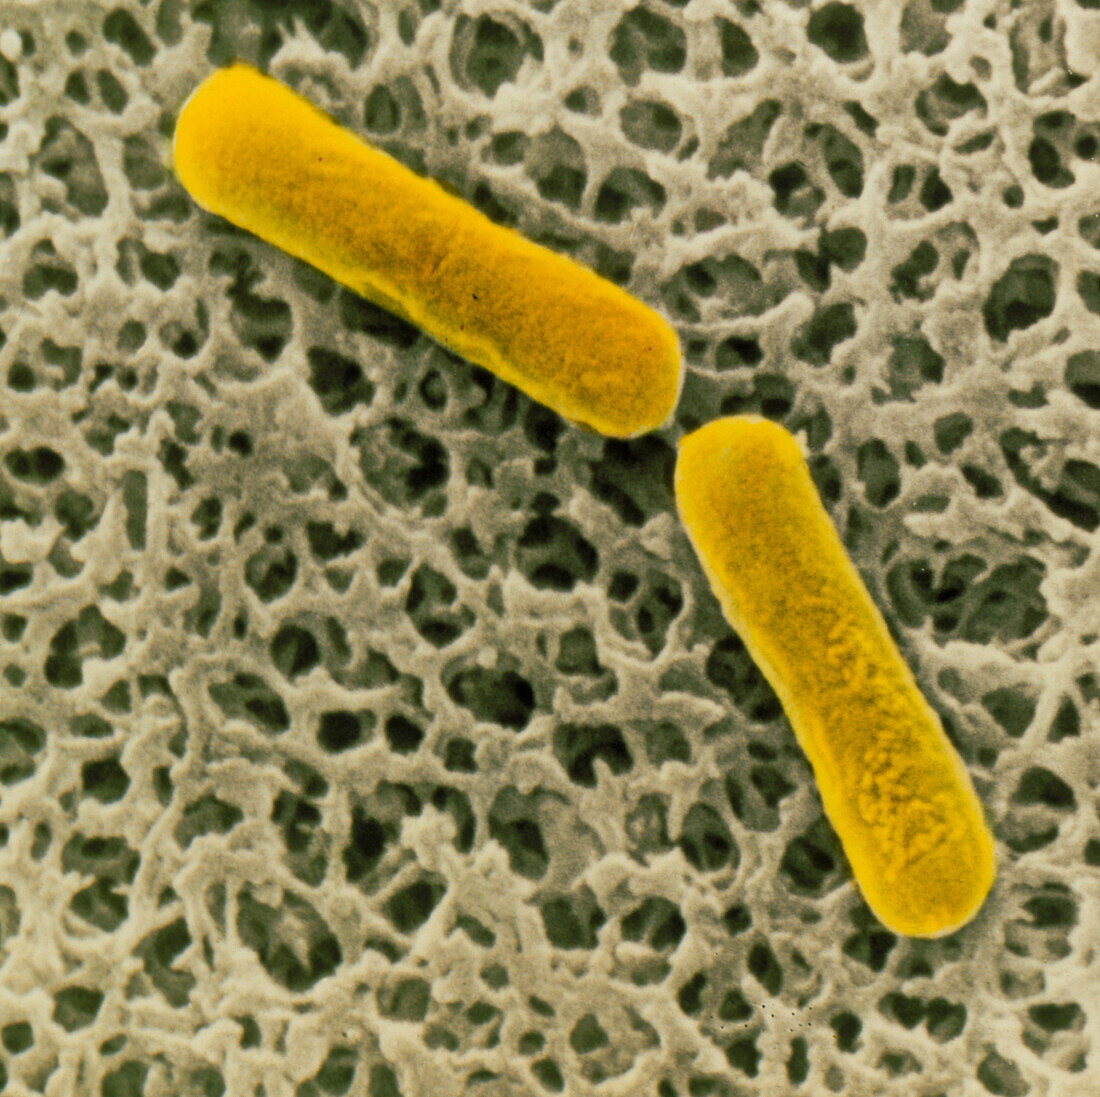 SEM of clostridium botulinum bacteria